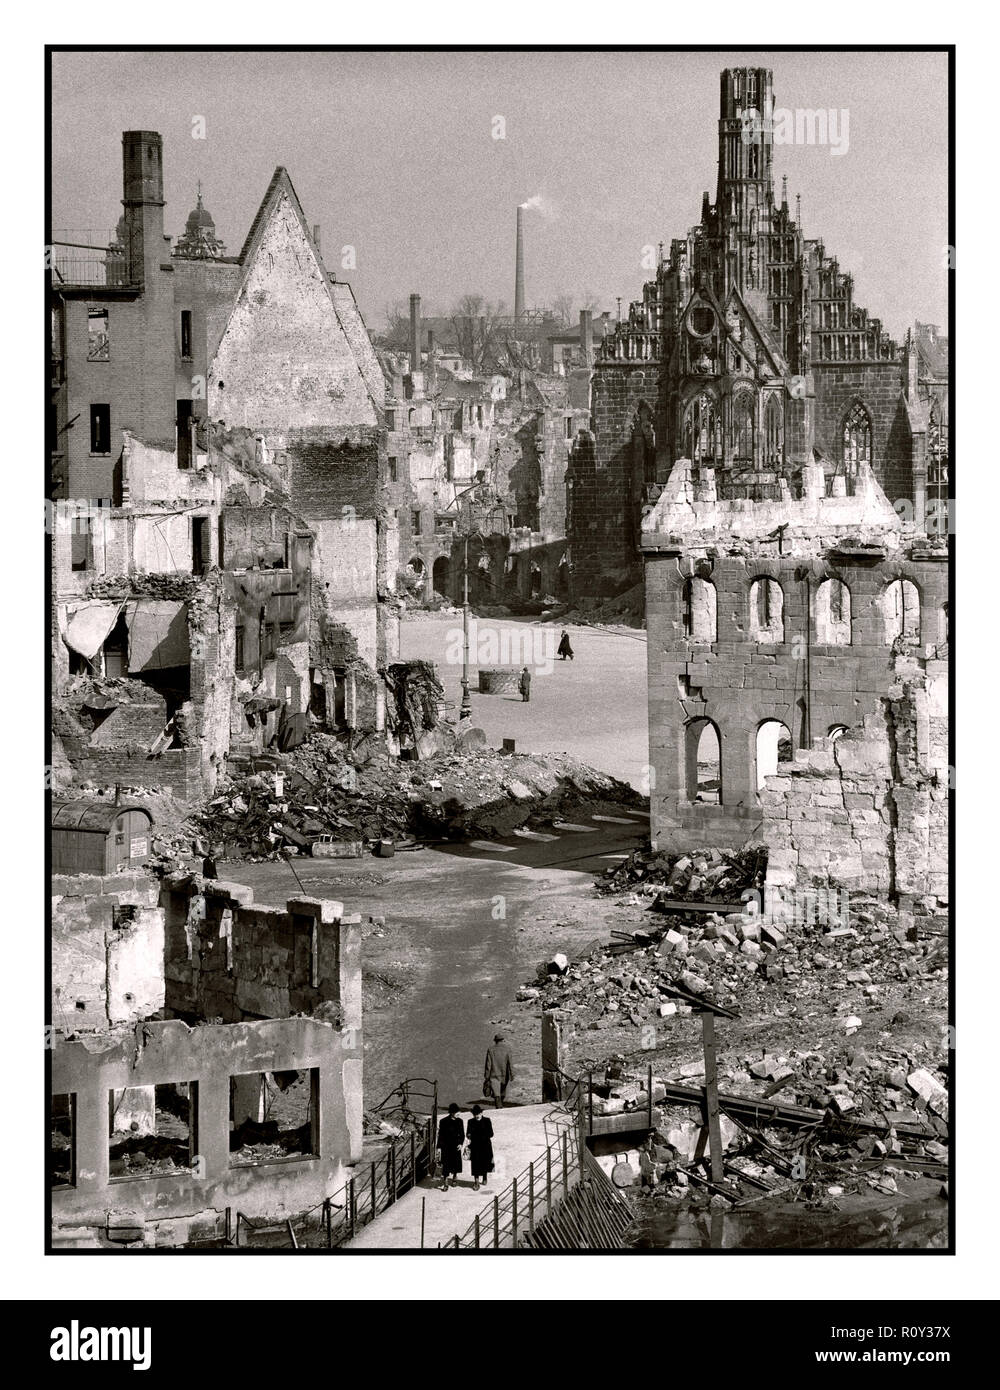 WW 2 britischen Bombenangriff auf NS-Stadt Nürnberg Deutschland mit gotischen Kirche im Hintergrund die Frauenkirche (Kirche unserer Dame) durch einen britischen Bombenangriff in der Nacht vom 2. Januar 1945 beschädigt wurde. Stockfoto